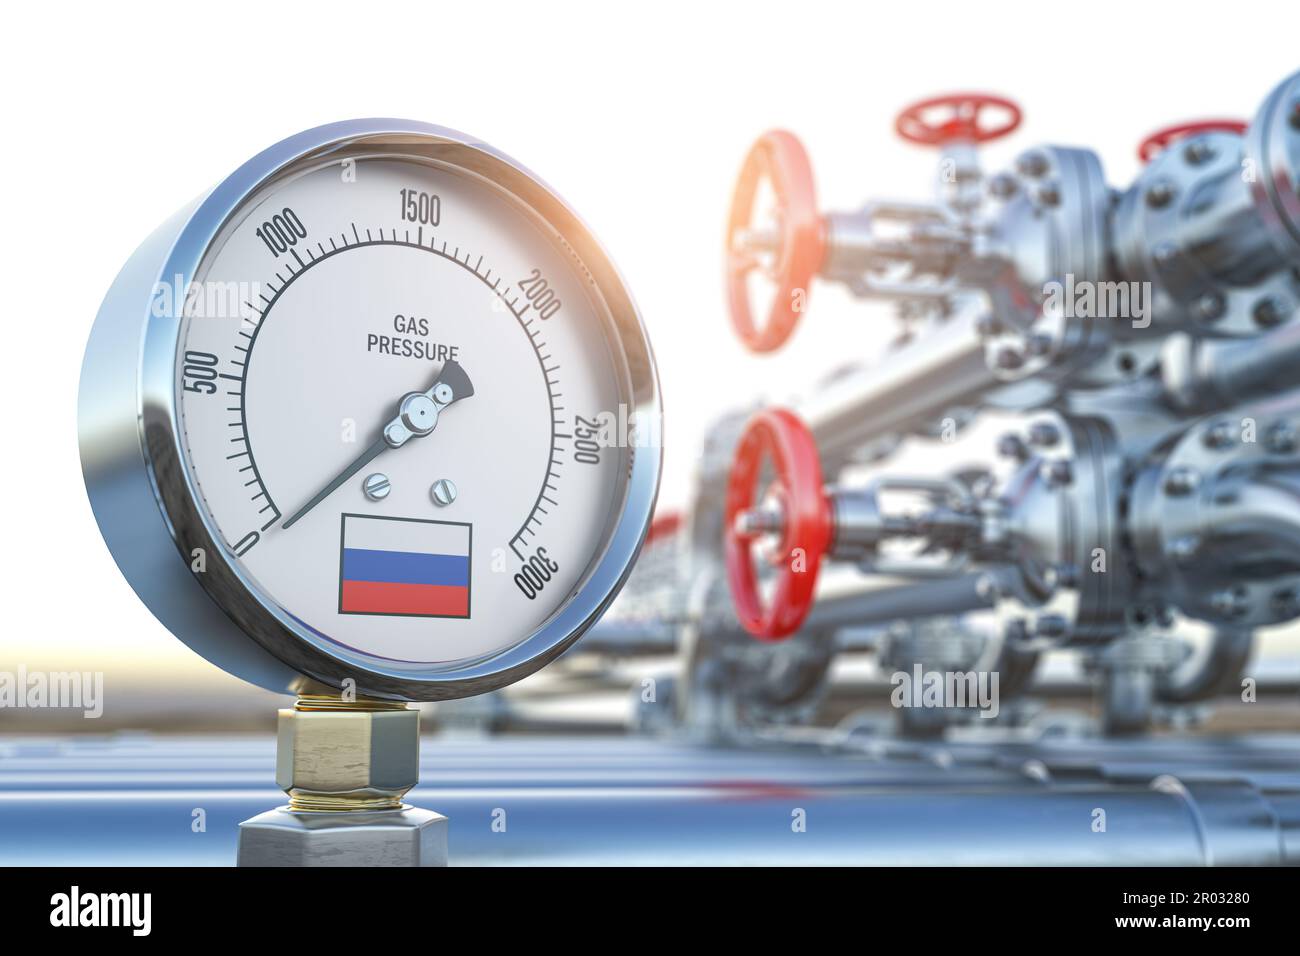 Gasdotto con indicatore con bandiera russa e pressione zero. Crisi energetica e concetto di azioni. illustrazione 3d Foto Stock